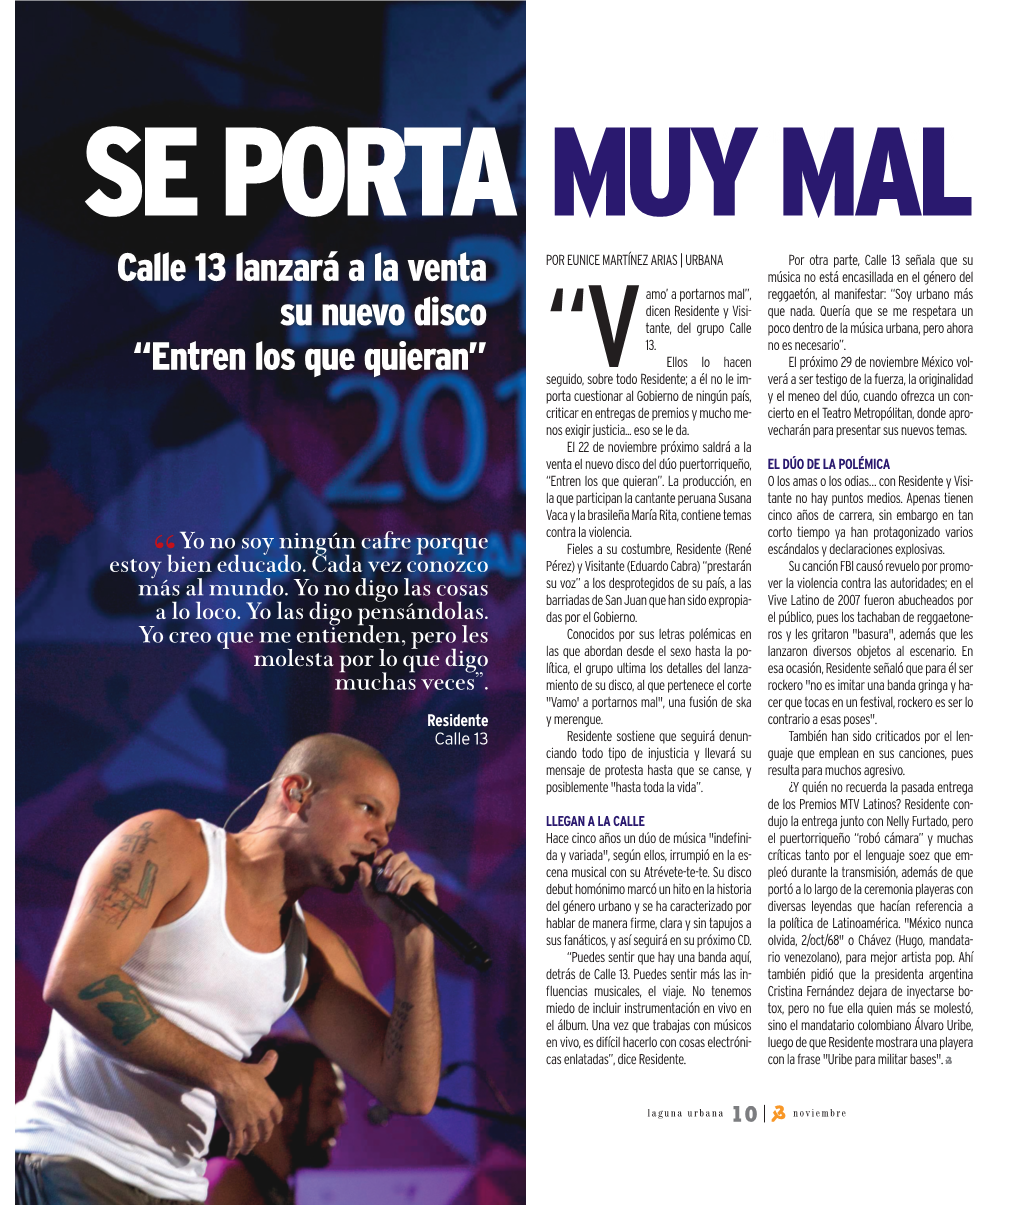 Calle 13 Lanzará a La Venta Su Nuevo Disco “Entren Los Que Quieran”